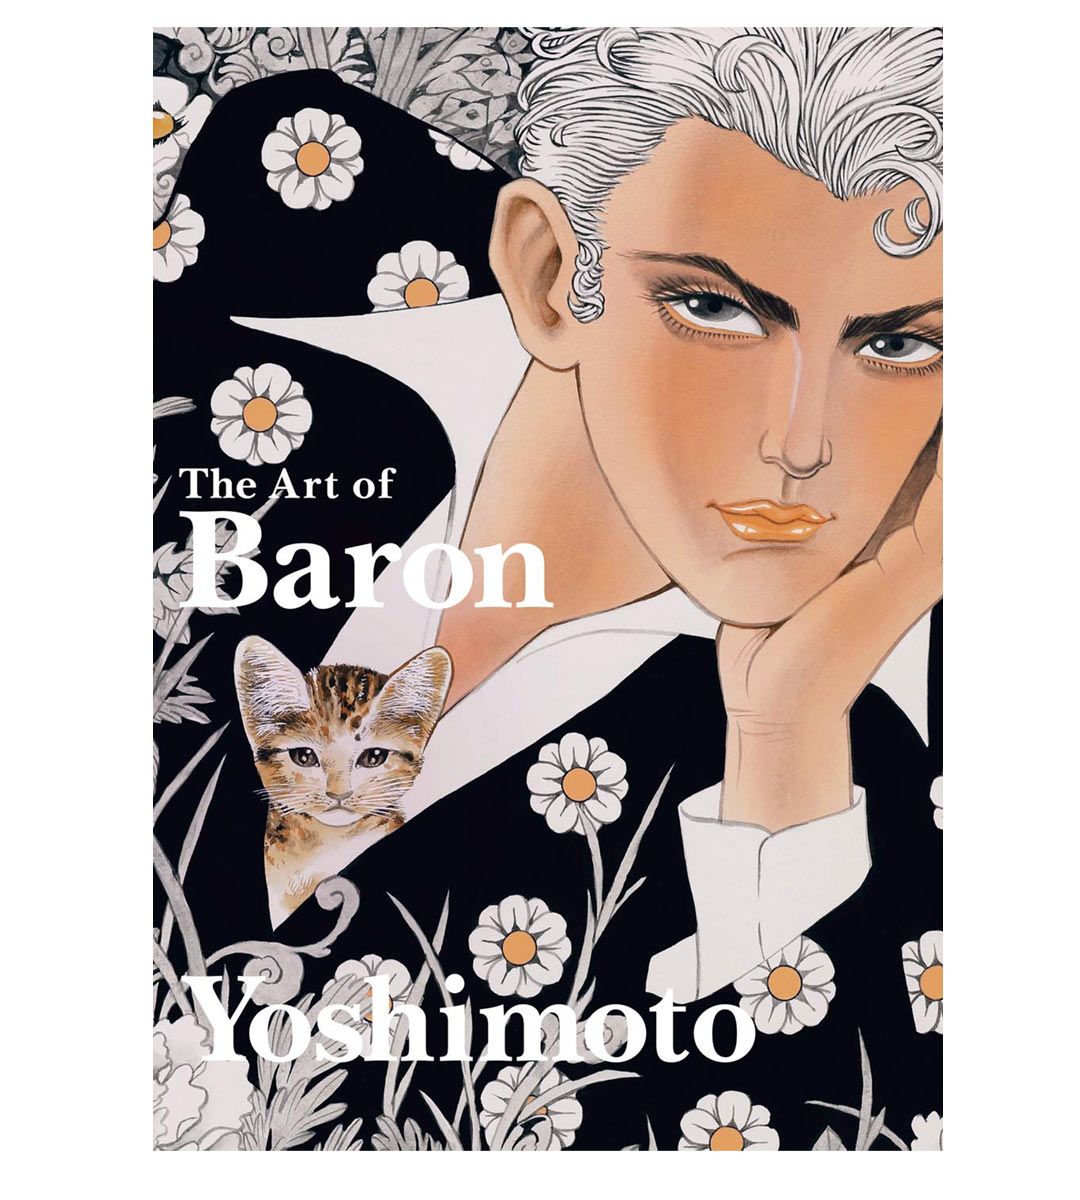 The Art of Baron Yoshimoto